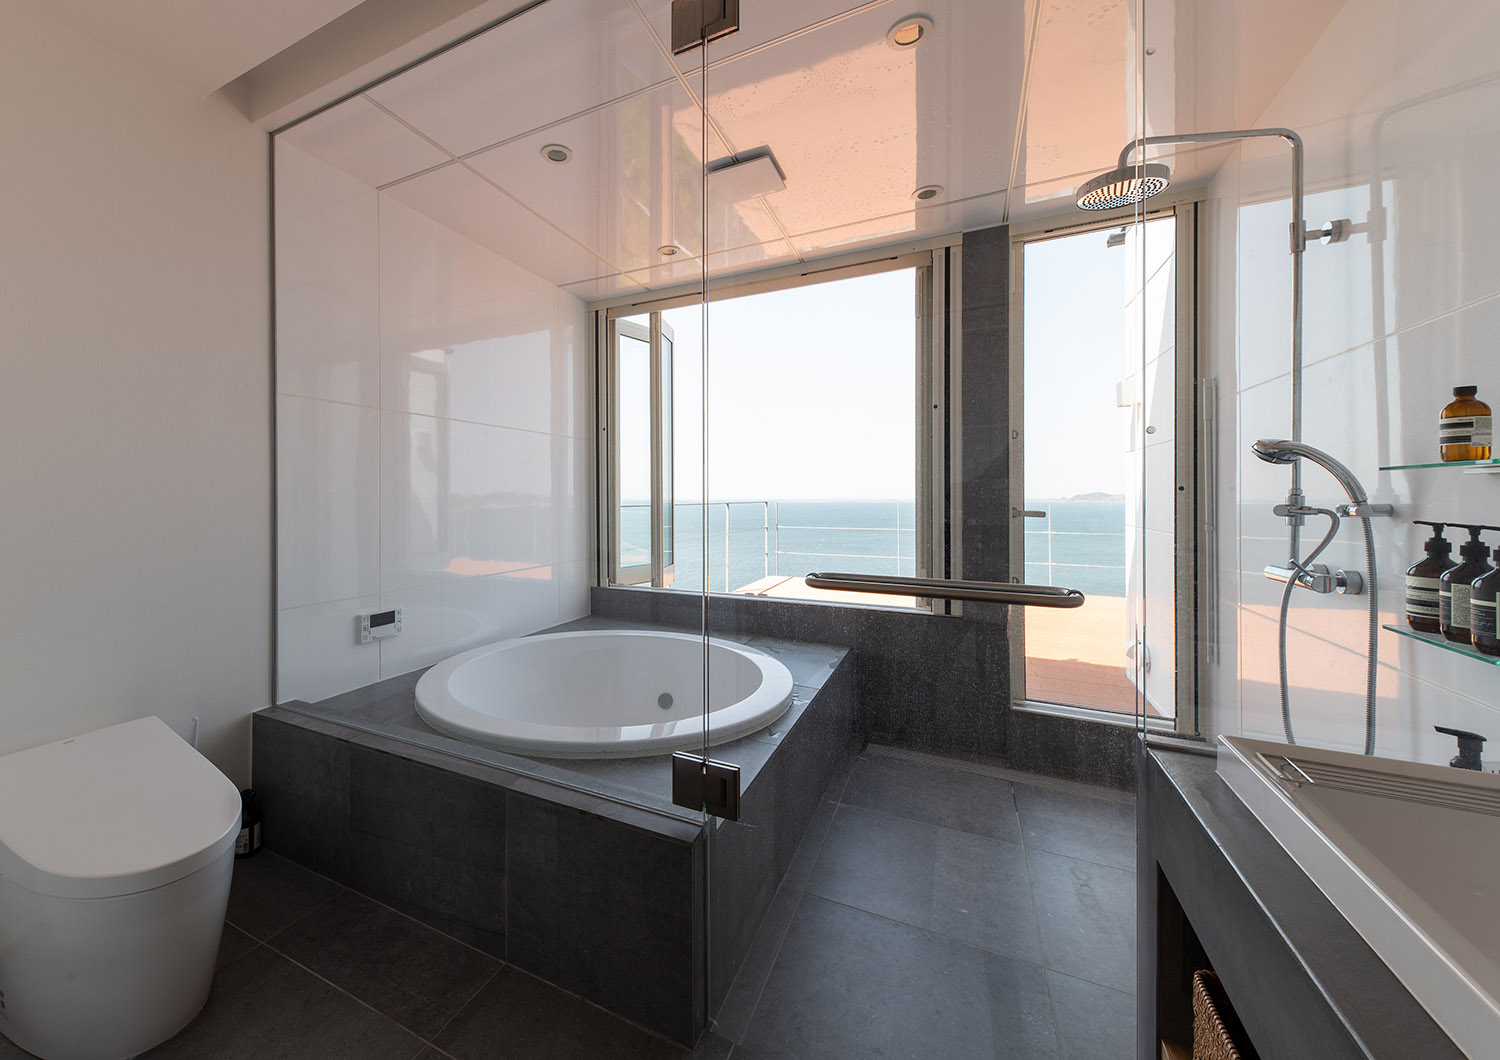 丸い浴槽で、海が見える高級感のある浴室・デザイン住宅